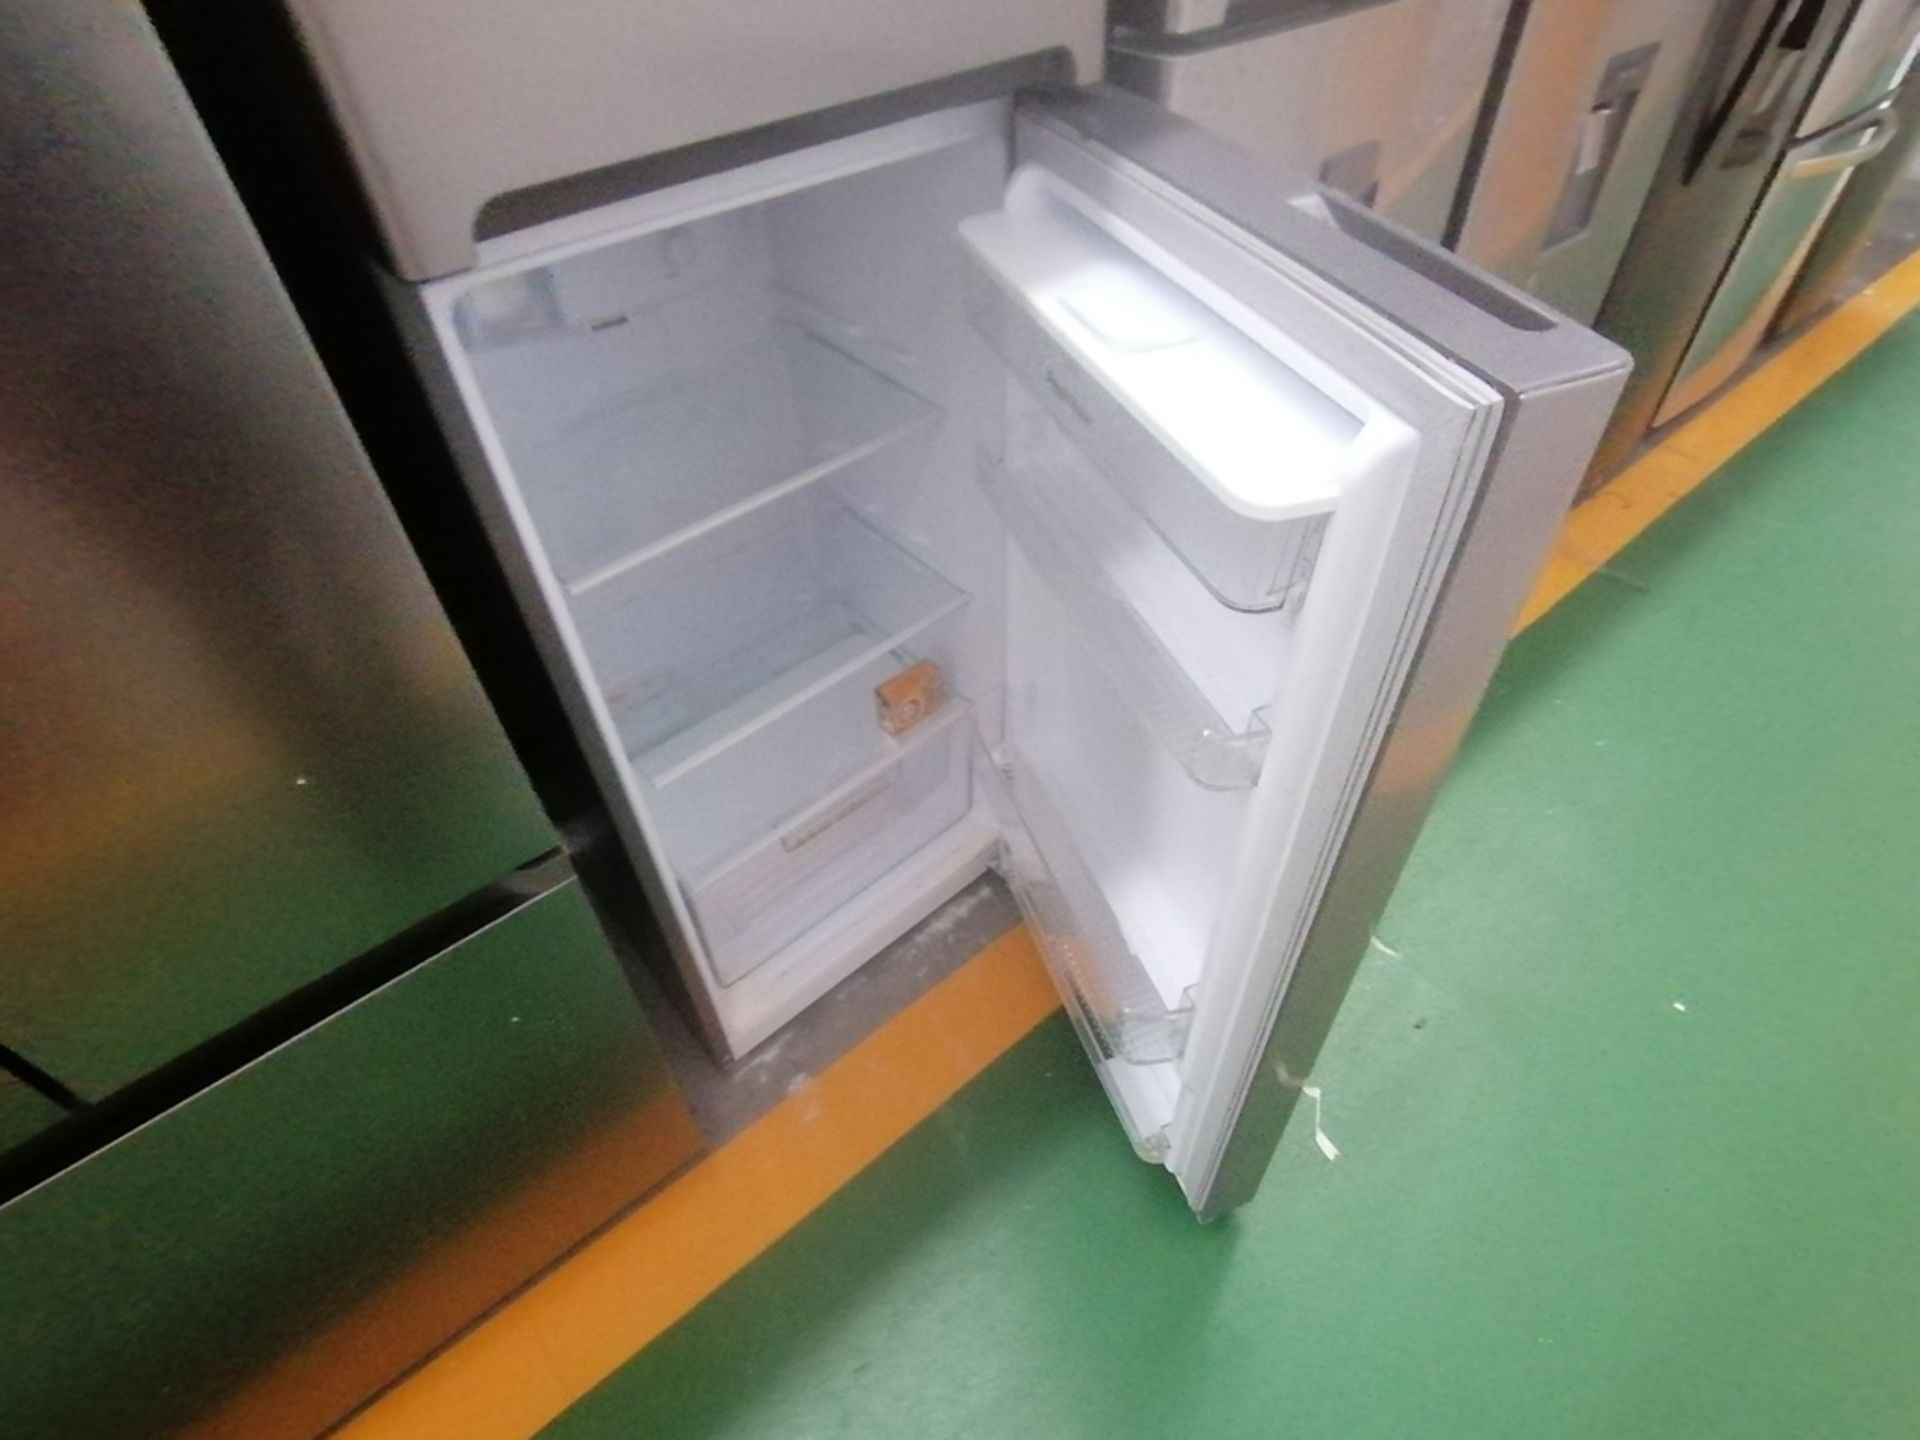 Lote de 2 refrigeradores incluye: 1 Refrigerador con dispensador de agua, Marca Winia, Modelo DFR40 - Image 15 of 16